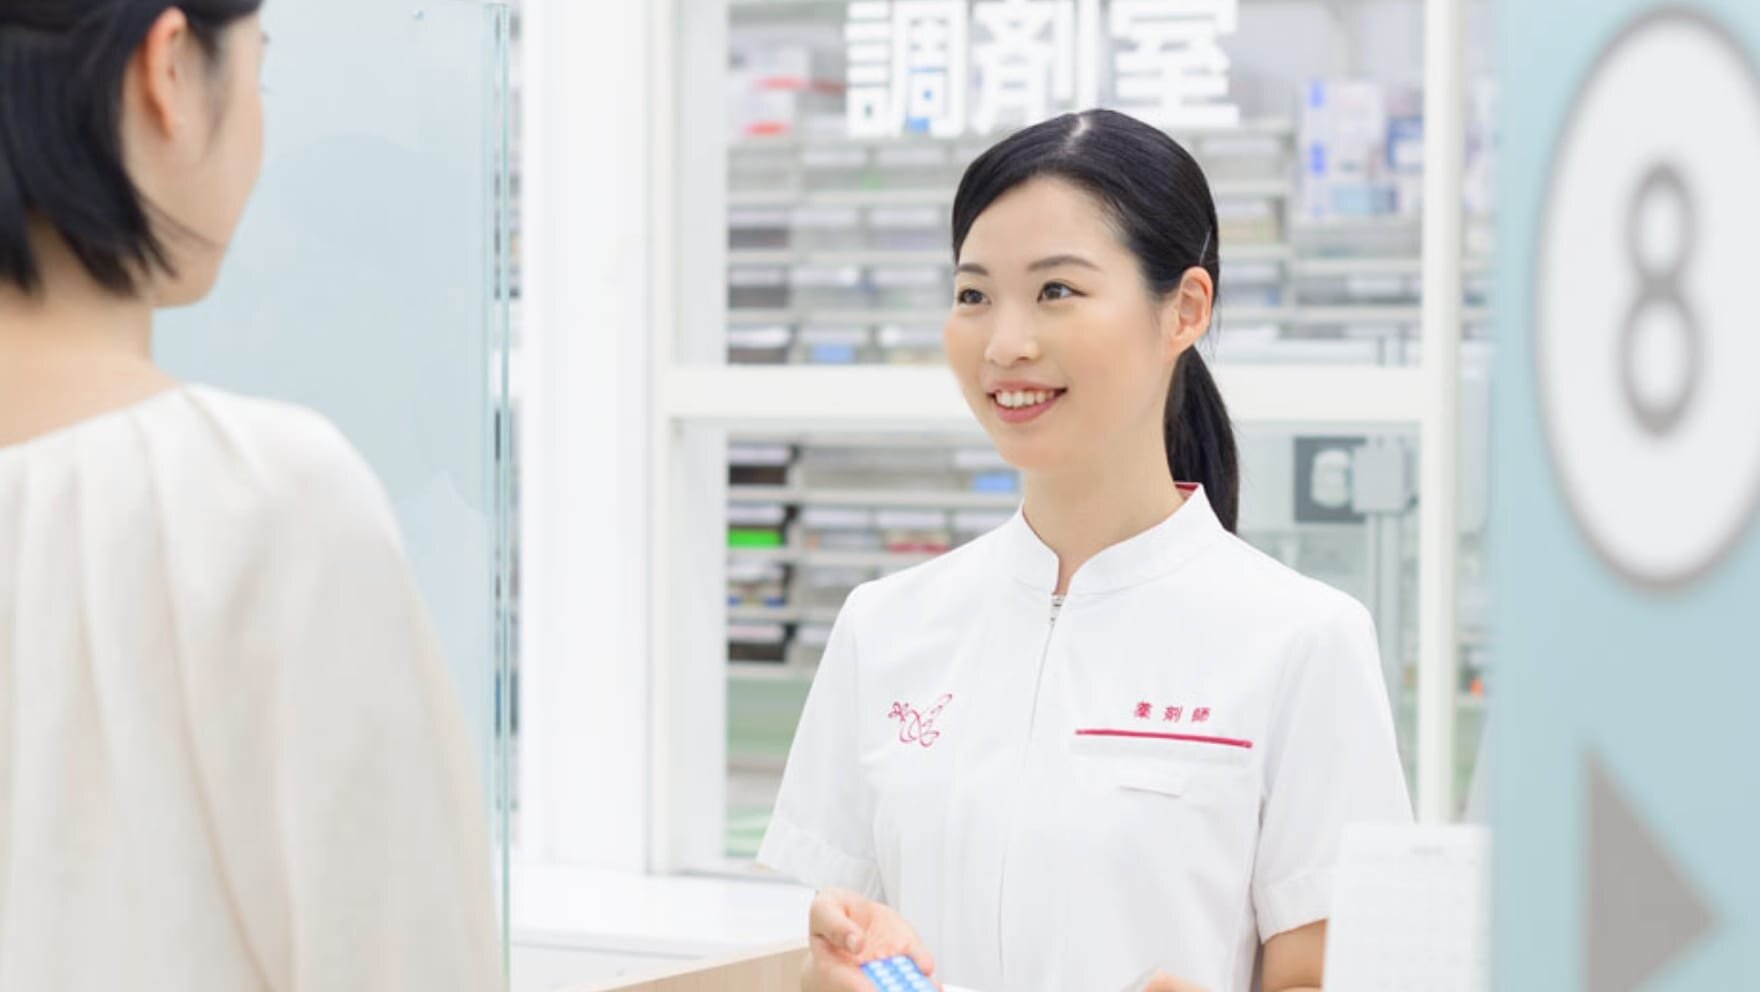 薬剤師と患者のイメージ写真。アイン薬局の制服を着た女性の薬剤師が笑顔で薬の説明をしている。